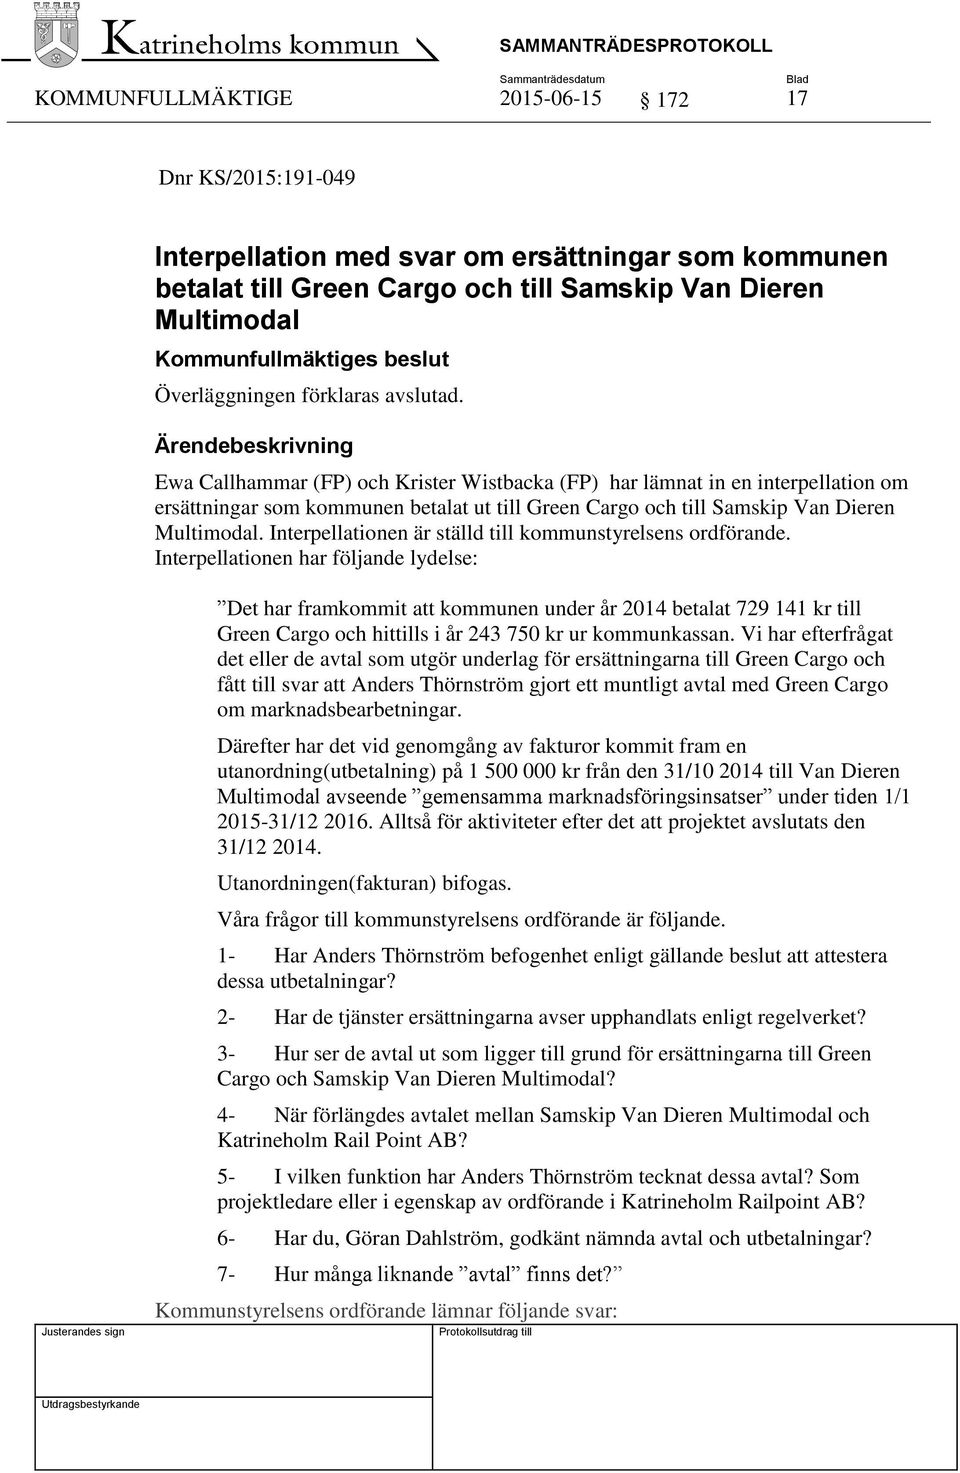 Ewa Callhammar (FP) och Krister Wistbacka (FP) har lämnat in en interpellation om ersättningar som kommunen betalat ut till Green Cargo och till Samskip Van Dieren Multimodal.